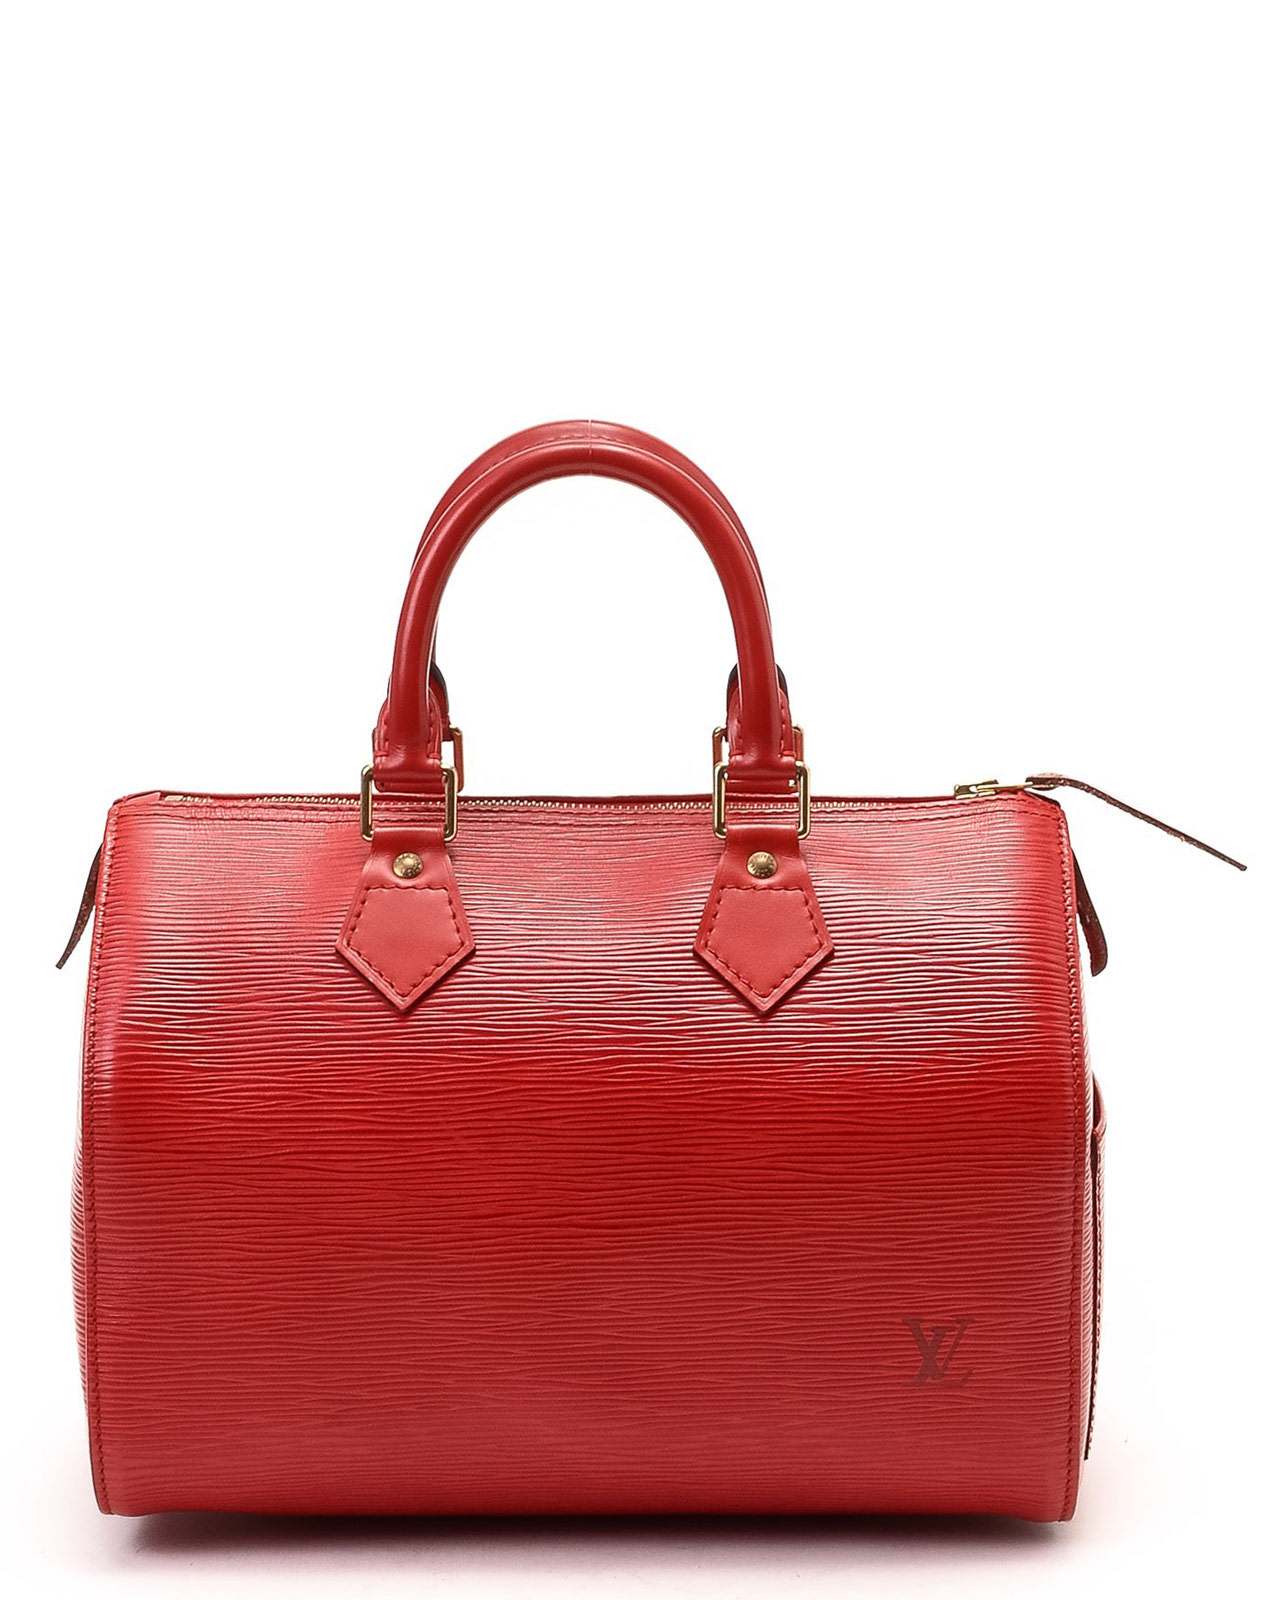 Lyst - Louis Vuitton Red Speedy 25 Handbag in Red